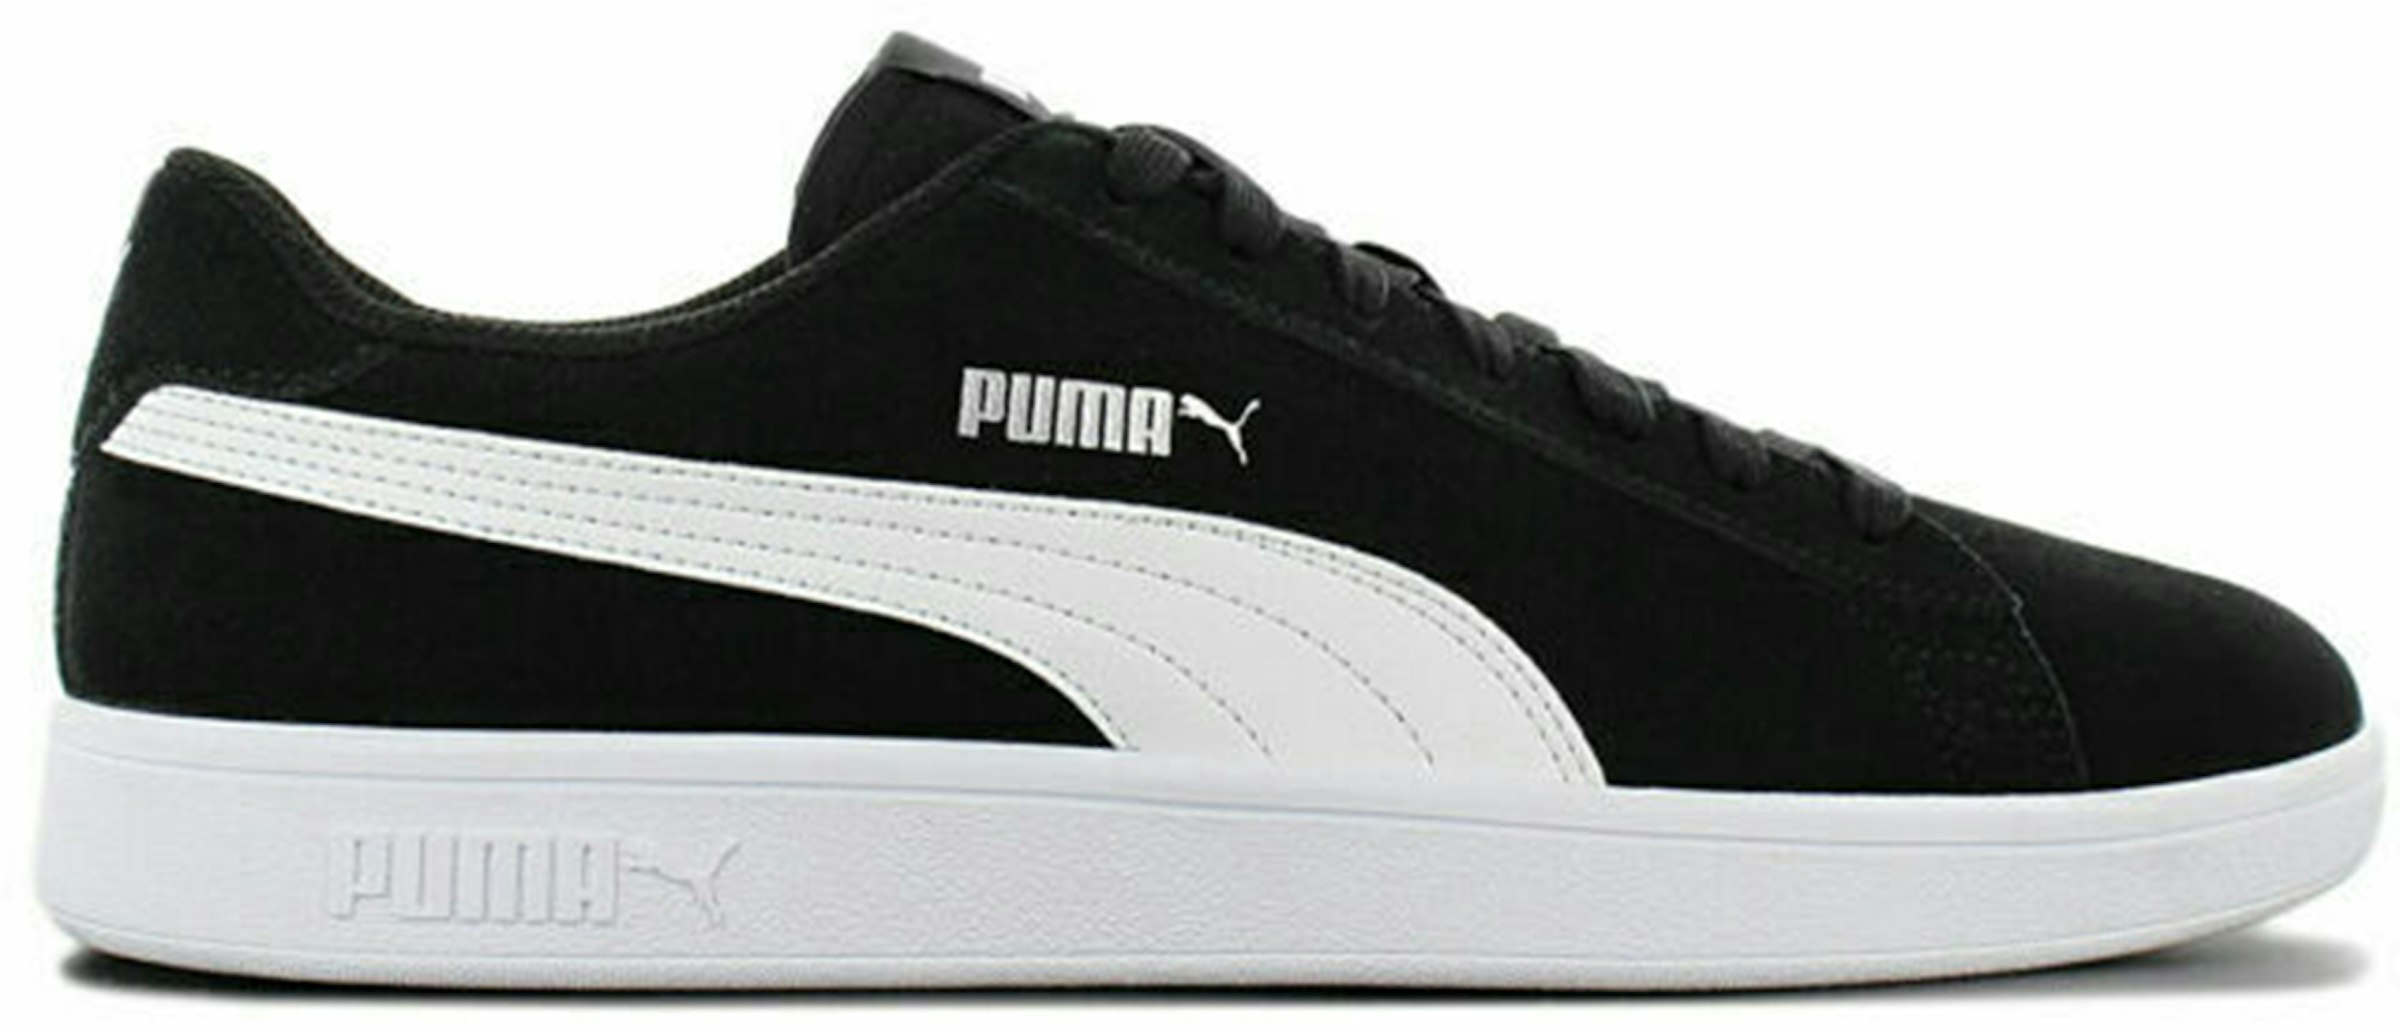 Puma Smash V2 Black Men's - 364989-01